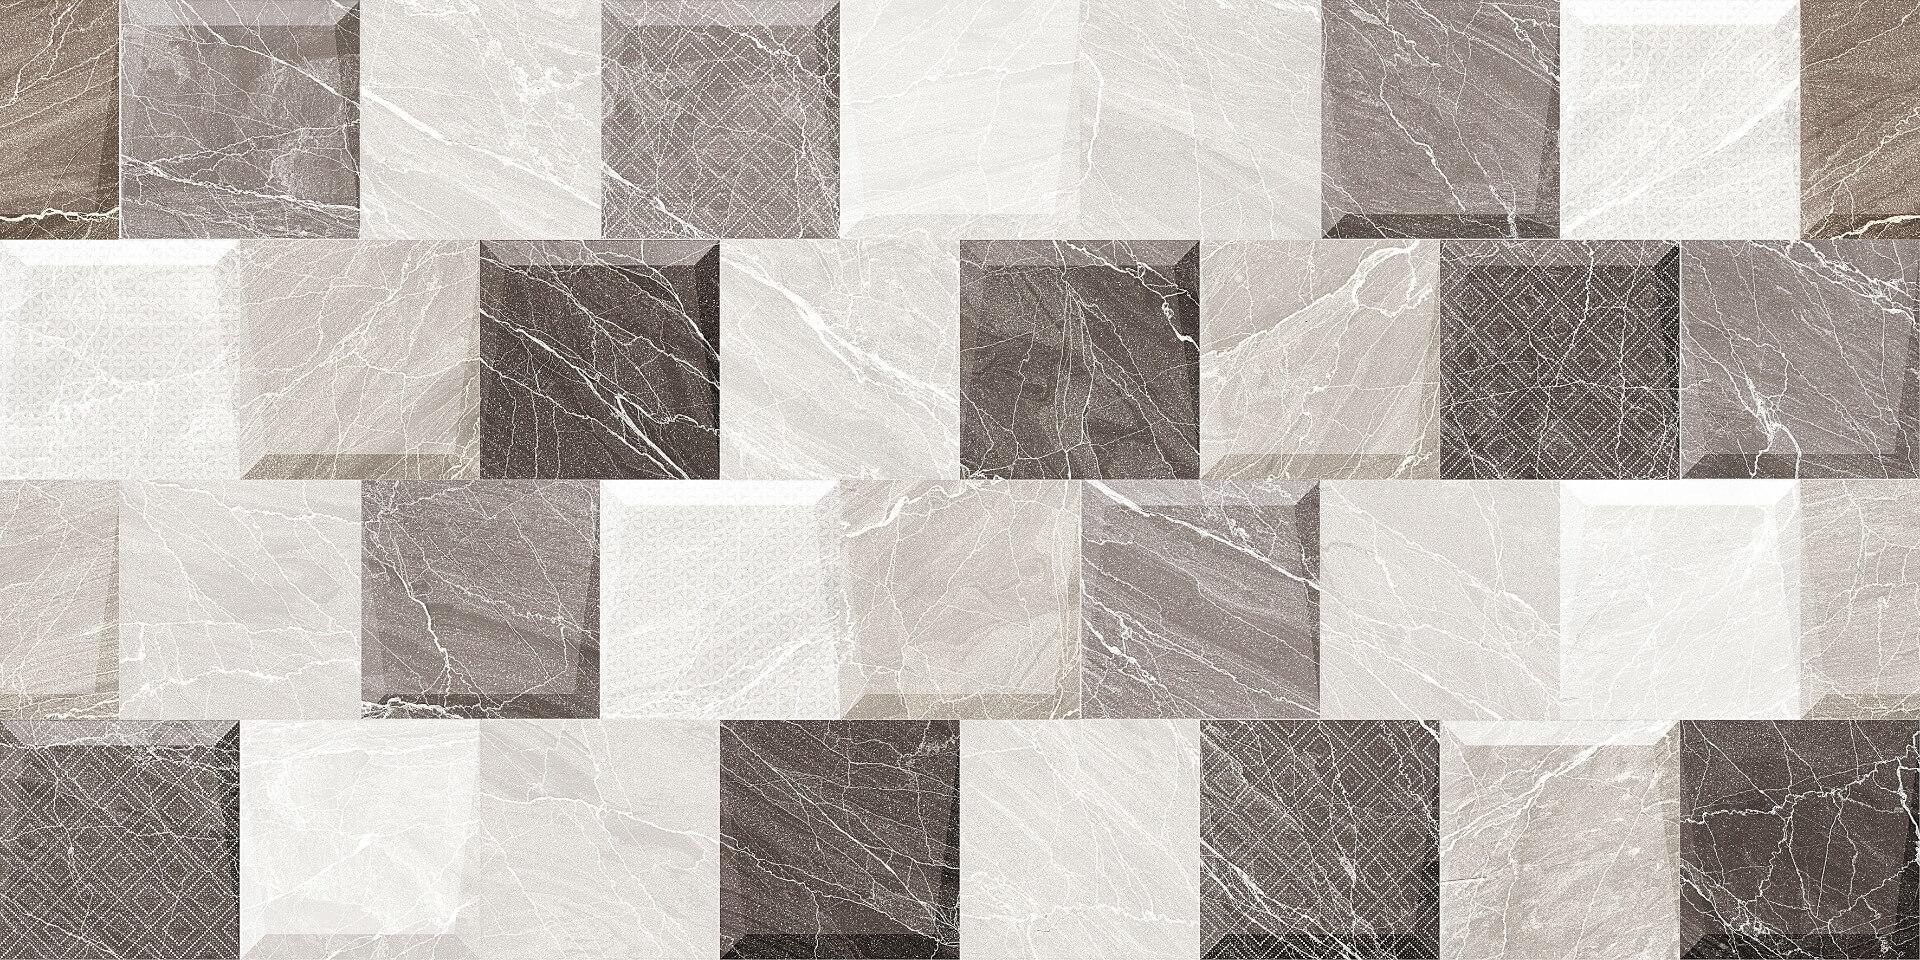 Grey Tiles for Bathroom Tiles, Living Room Tiles, Kitchen Tiles, Accent Tiles, Dining Room Tiles, Bar/Restaurant